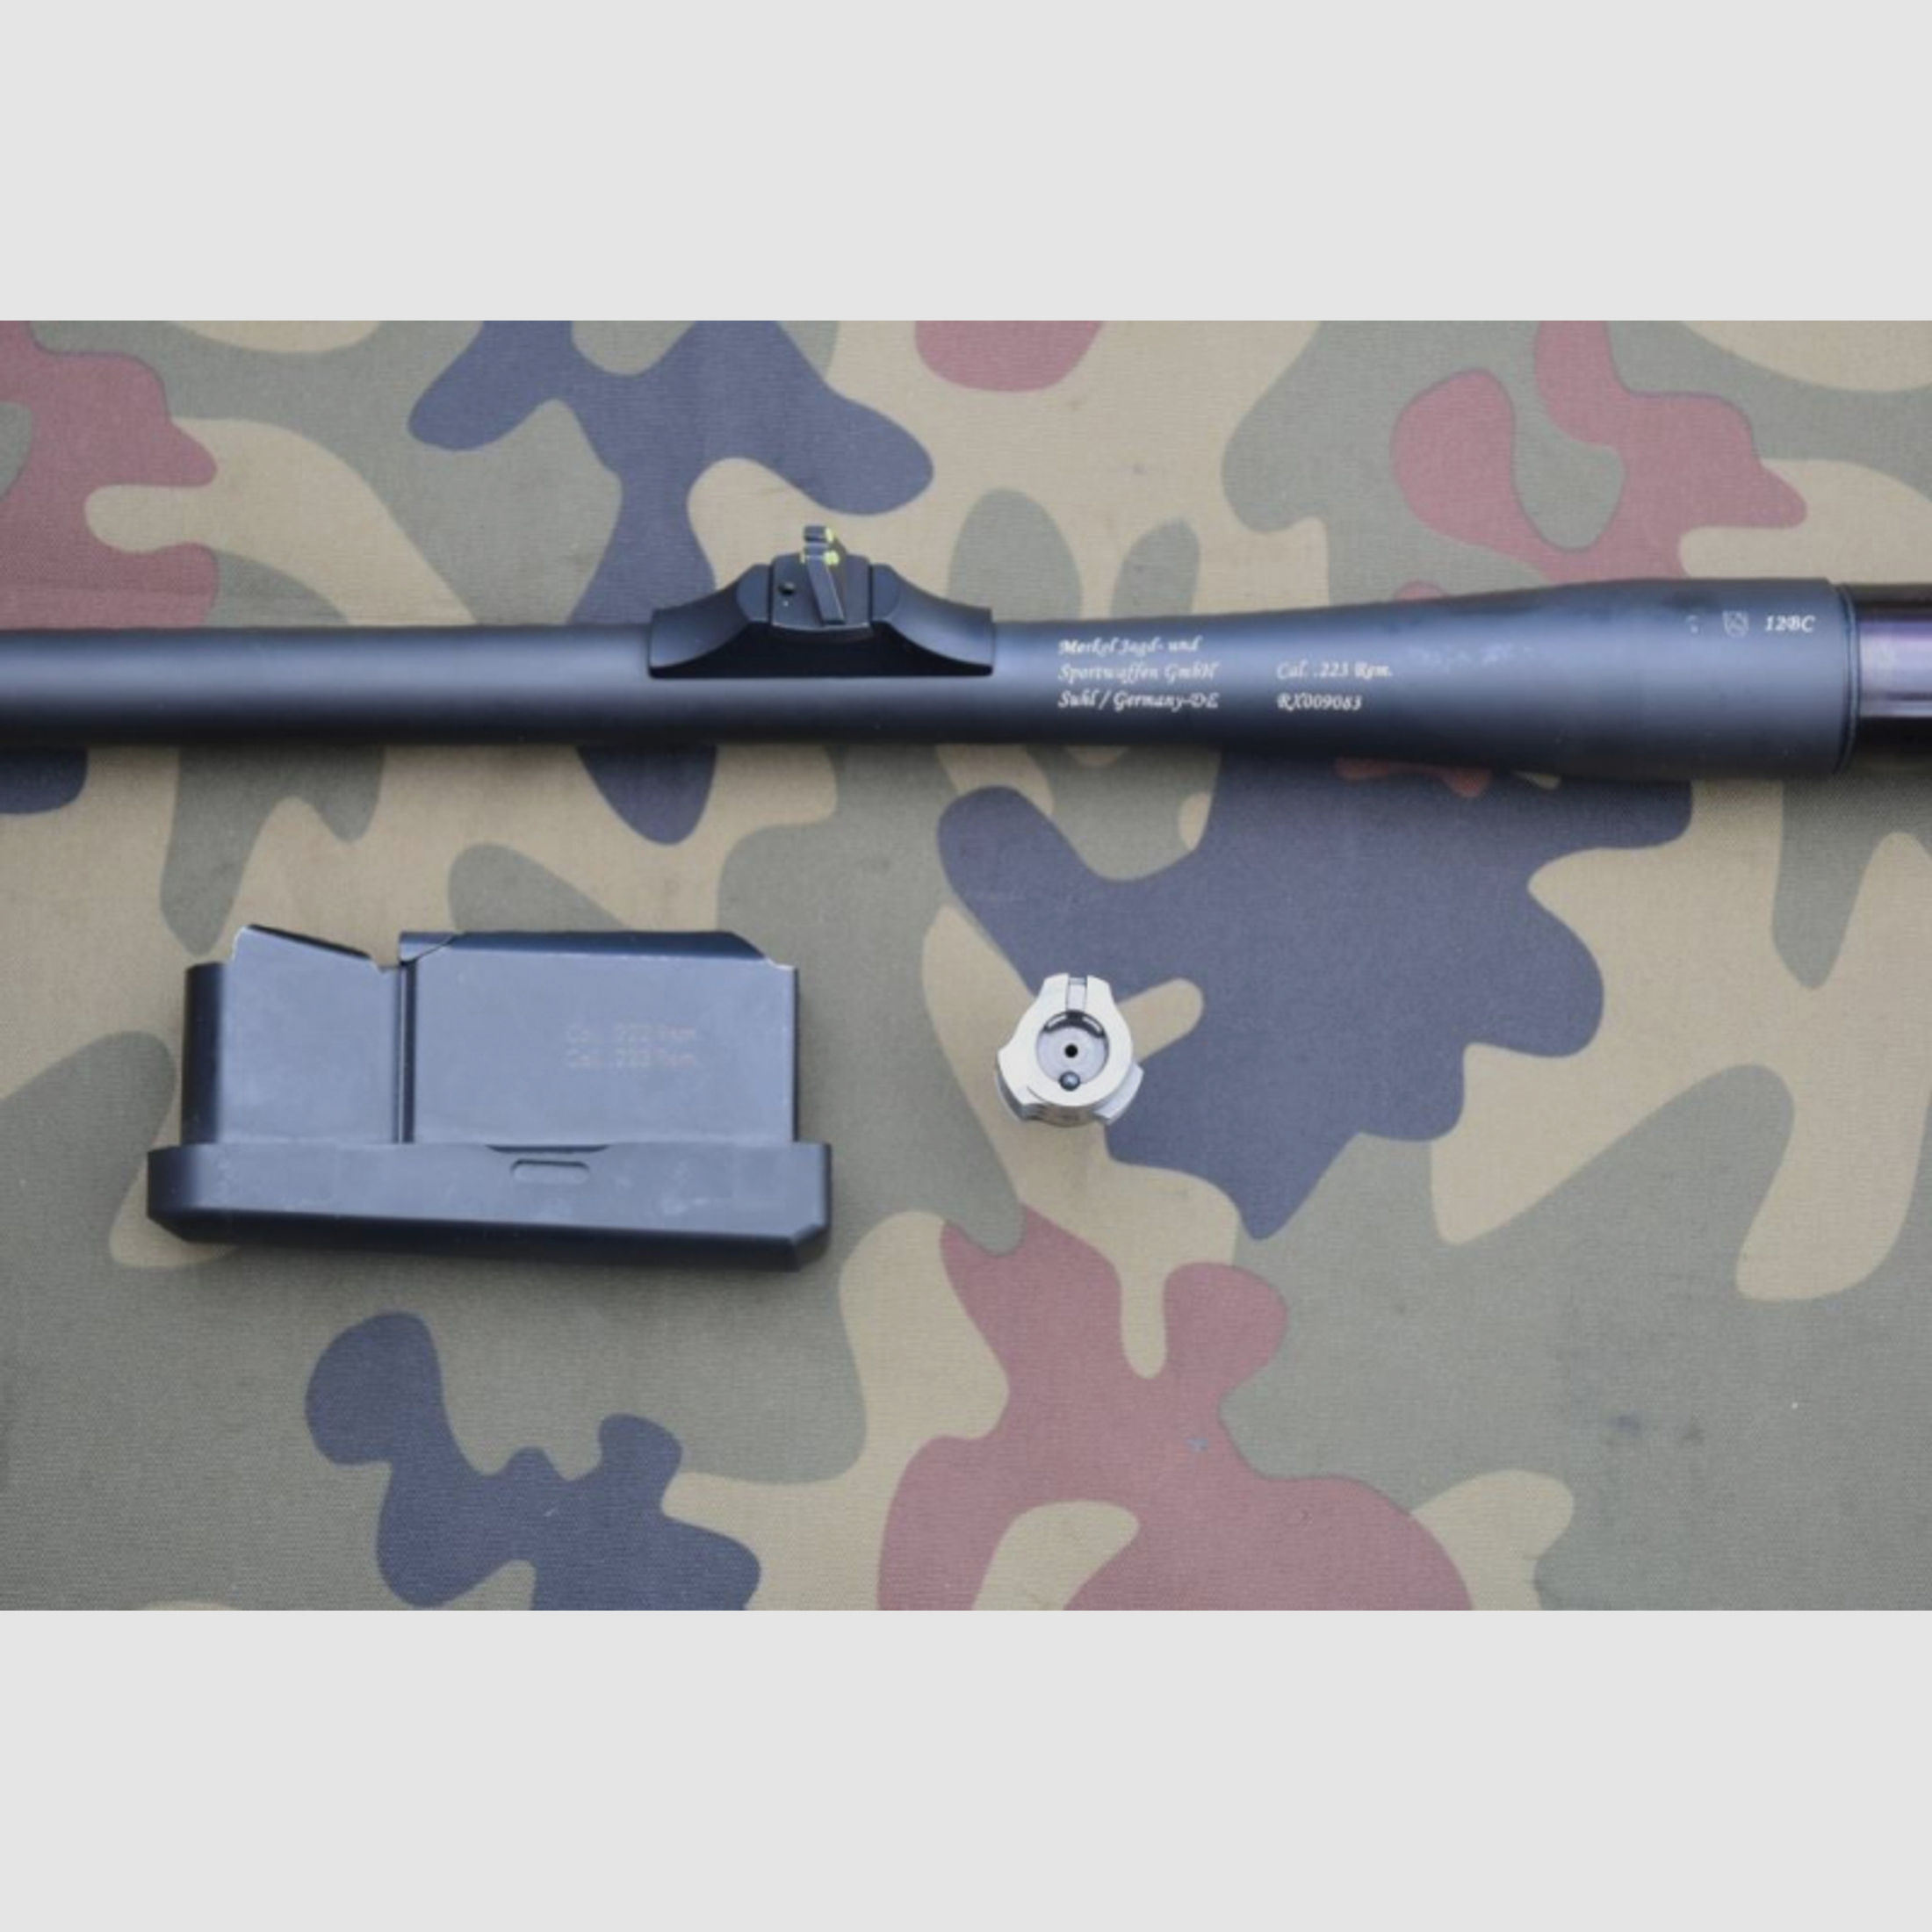 Austauschlauf Merkel RX Helix Kaliber .223 Remington mit passendem Verschlusskopf und Magazin TOP!